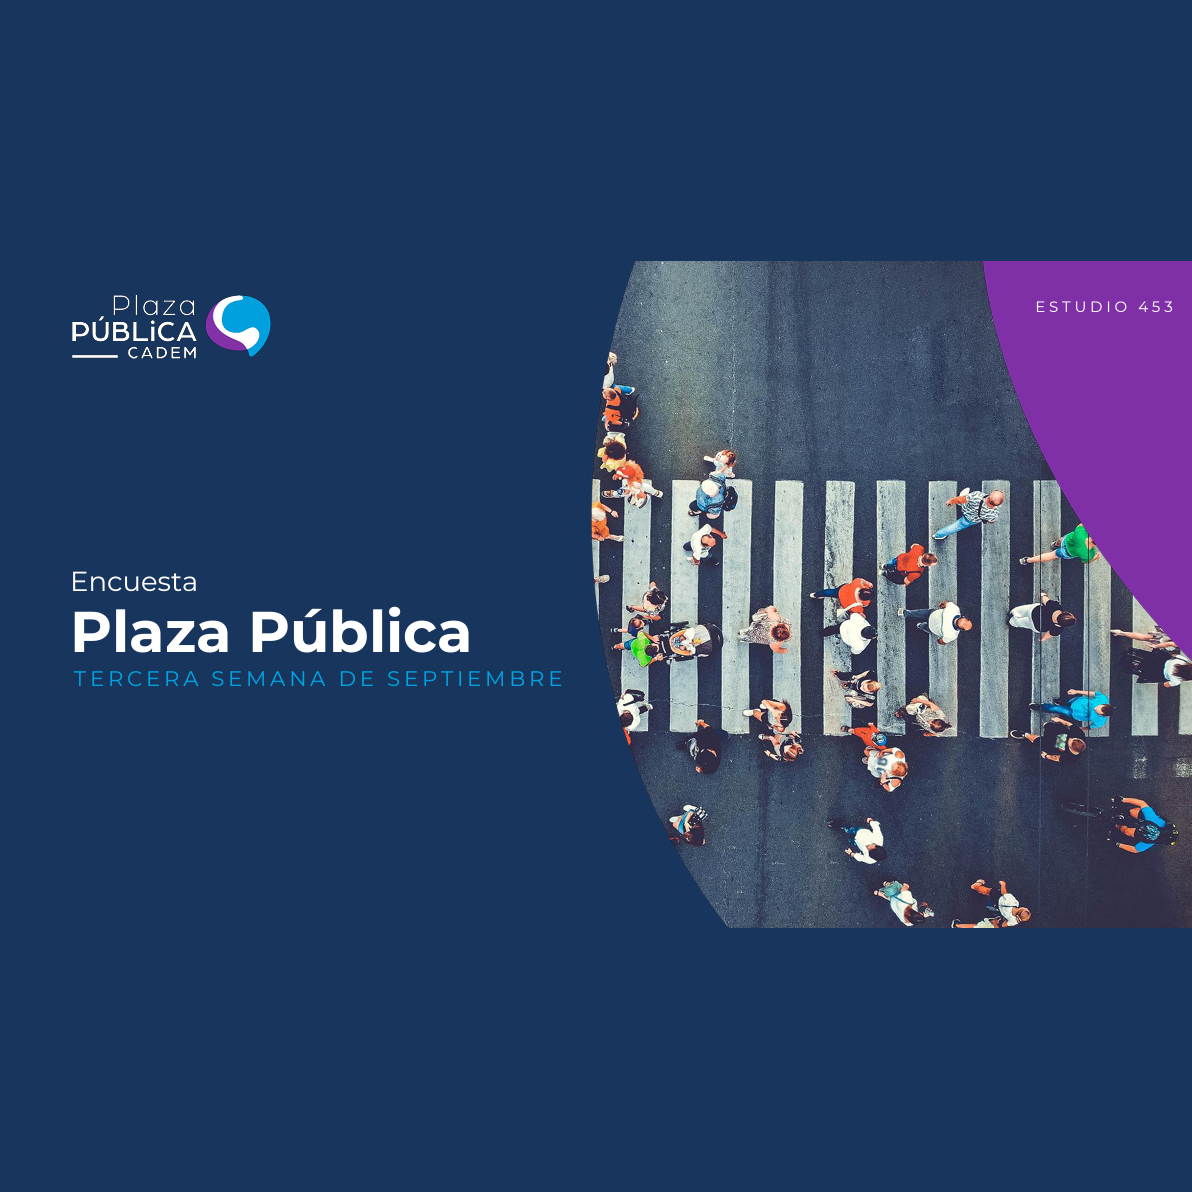 Estudio: Encuesta Plaza Pública – Tercera semana de septiembre